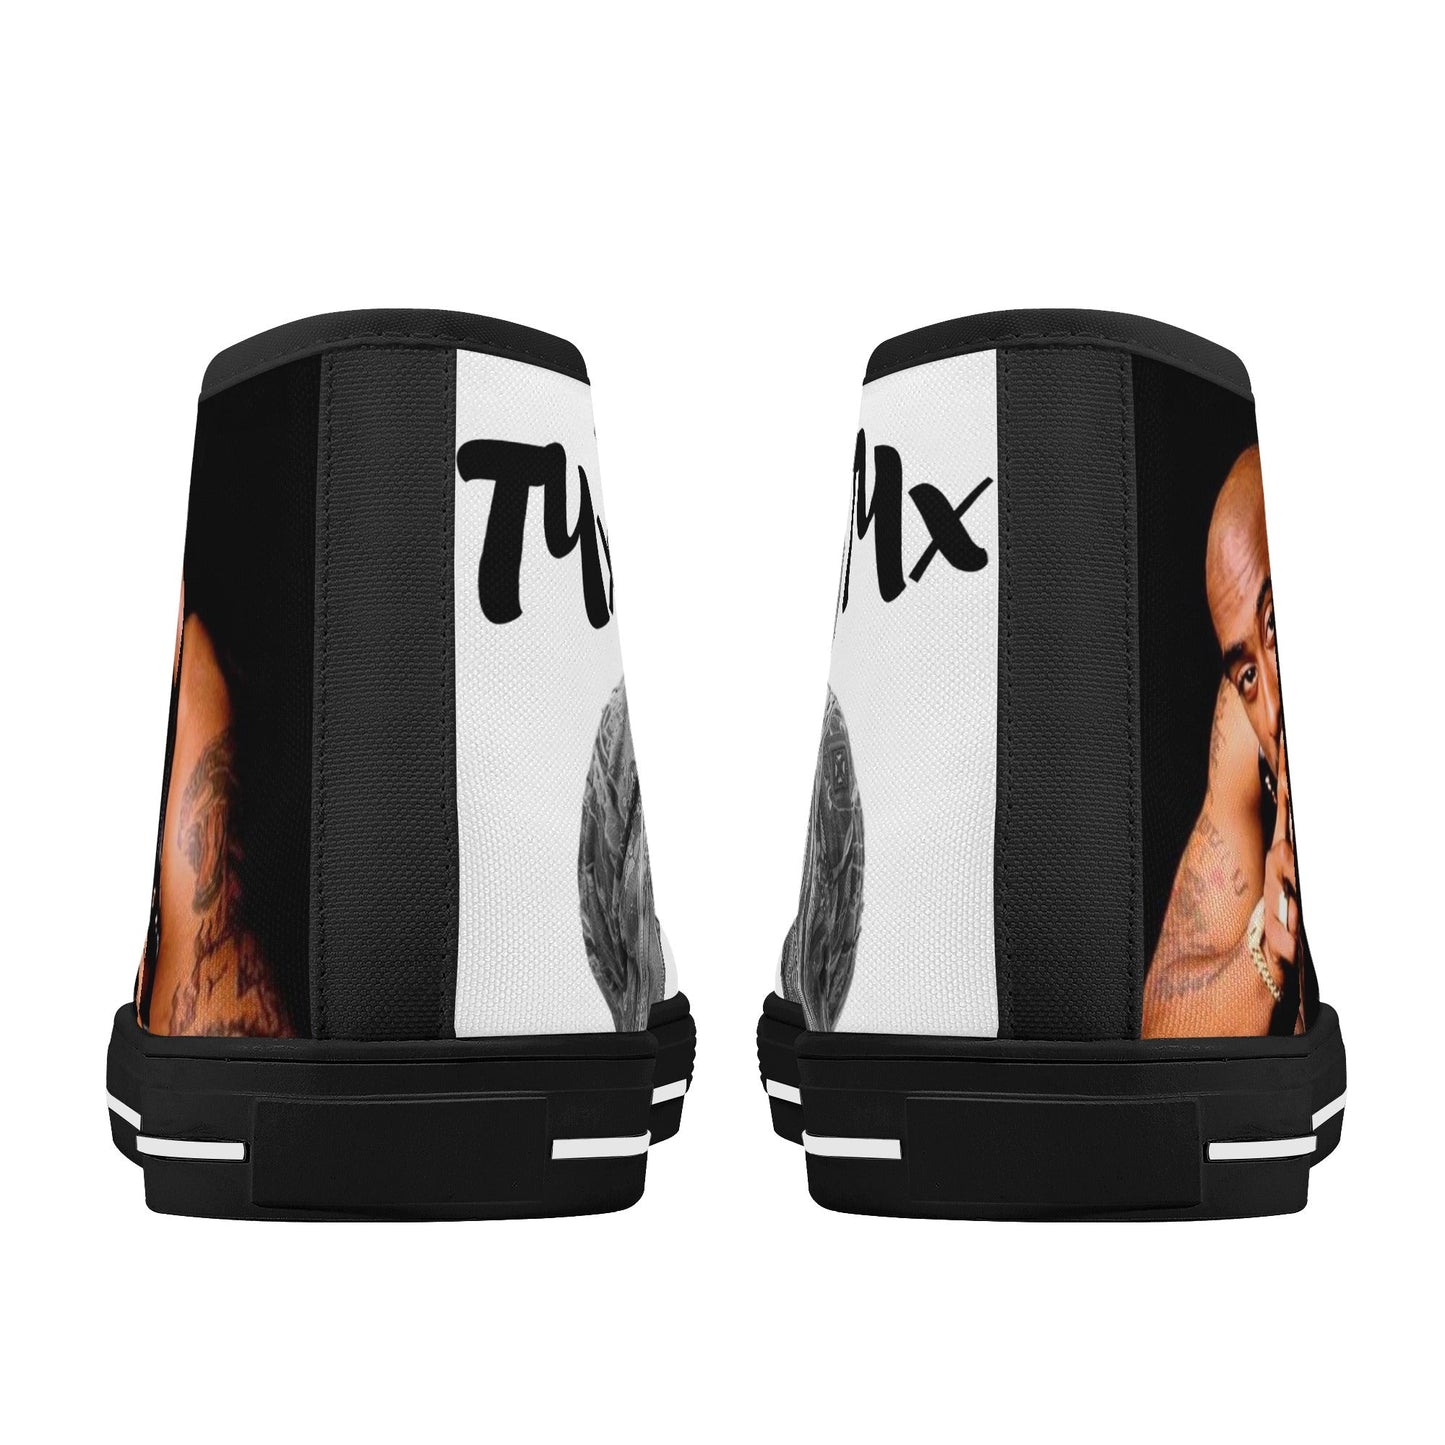 T4x Legends Men's High Top Canvas Shoes - T4x Quadruple Love